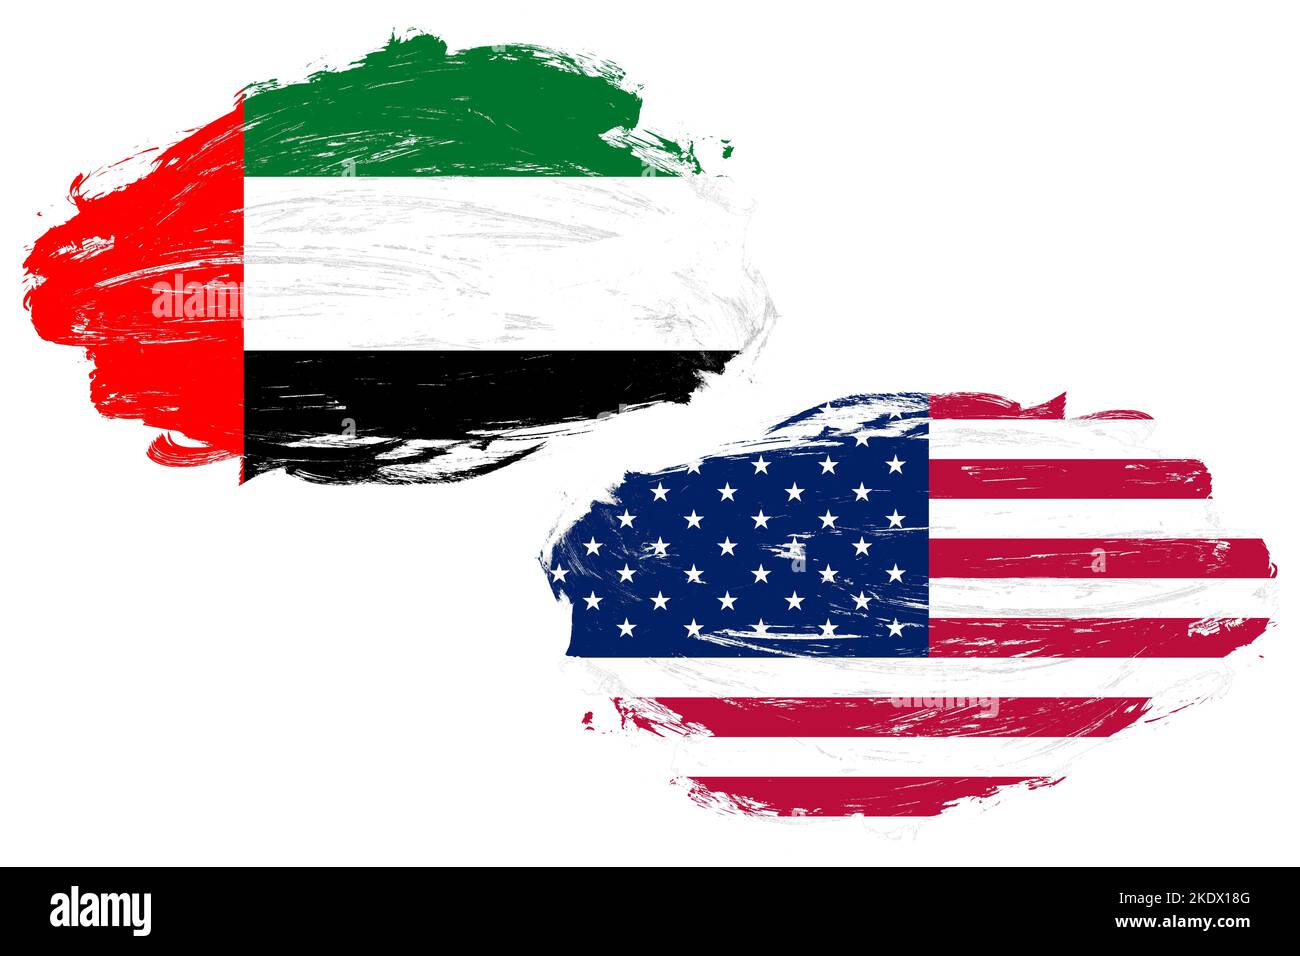 Les émirats arabes Unis et les états-unis drapeau ensemble sur un fond de pinceau blanc Banque D'Images